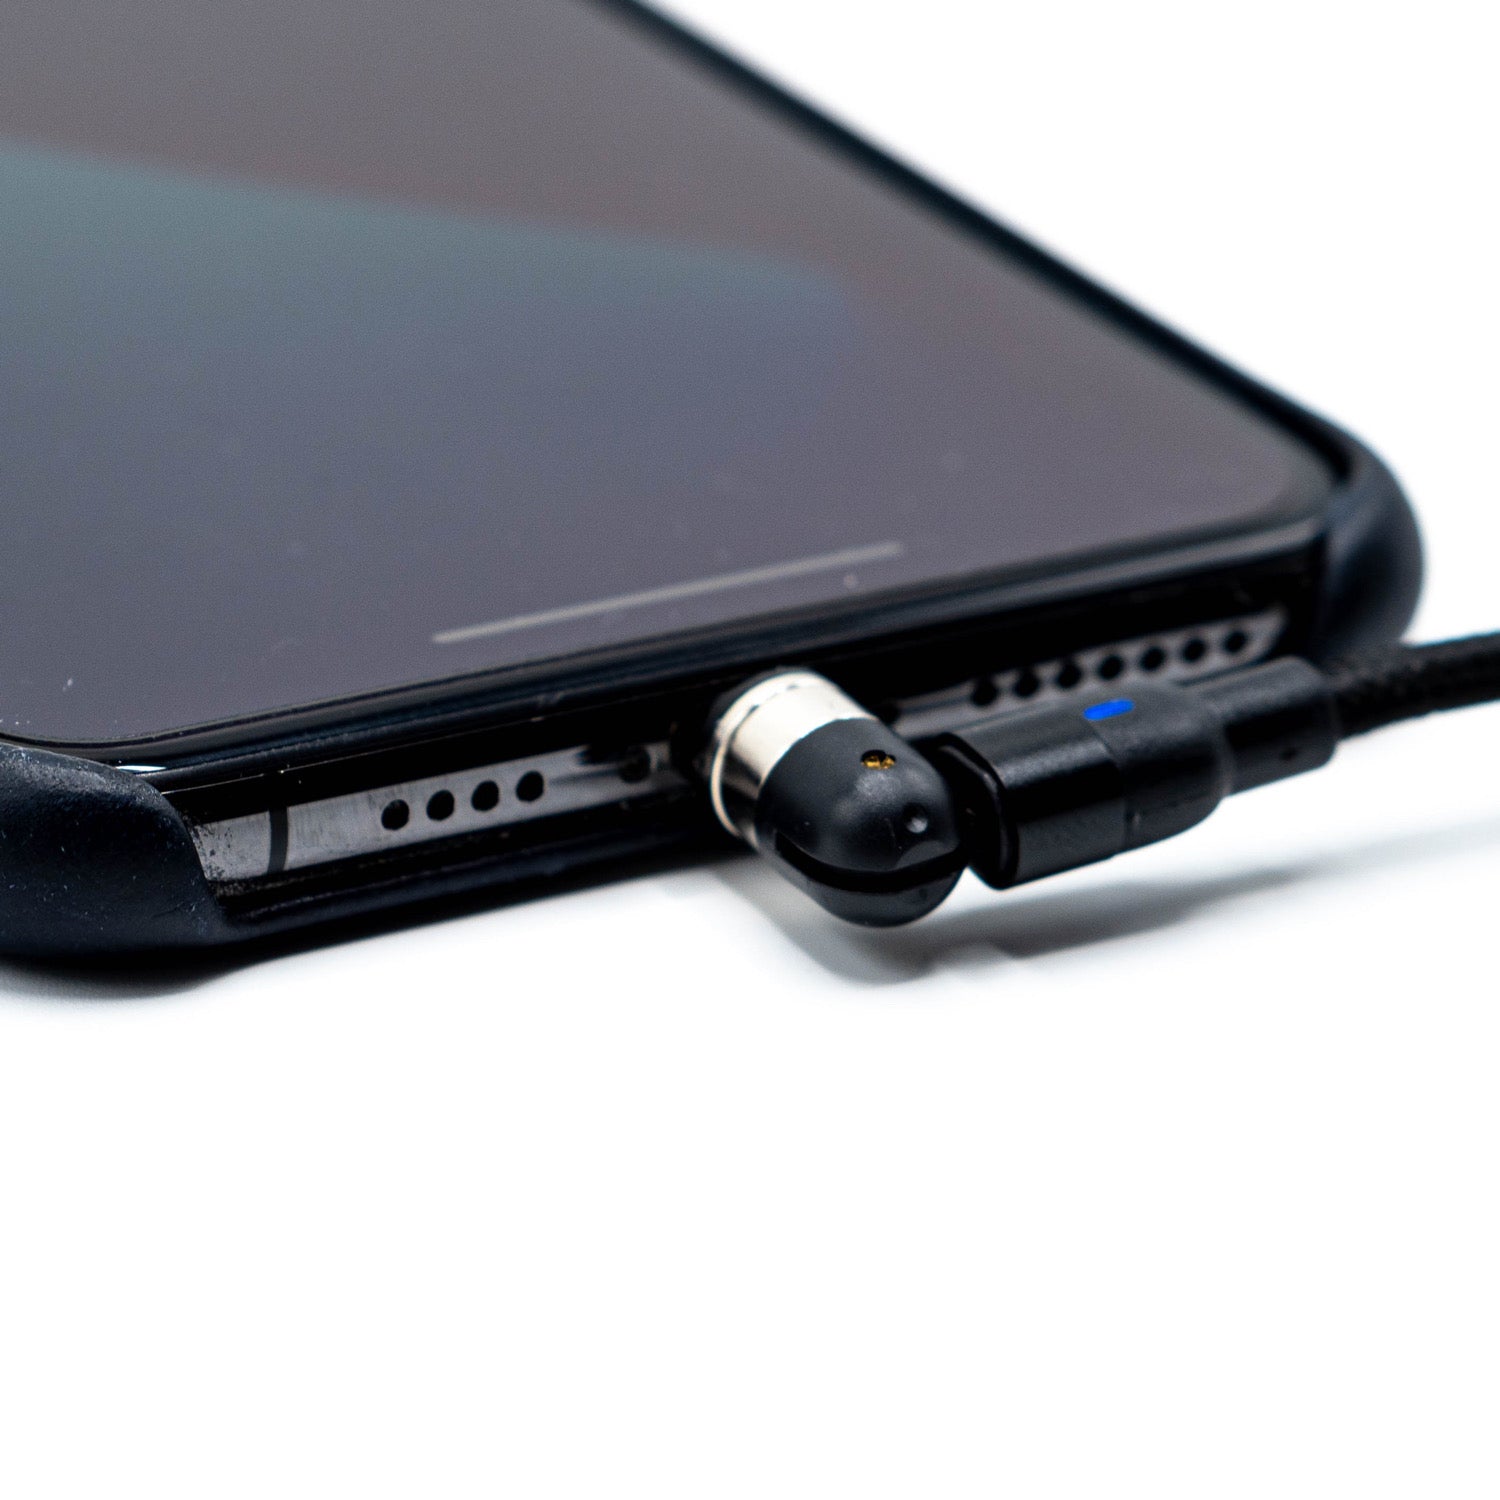 Cablu USB Magnetic 540° pentru Încărcare și Transfer Date Universal - 3 în 1 - Vreau Chestii